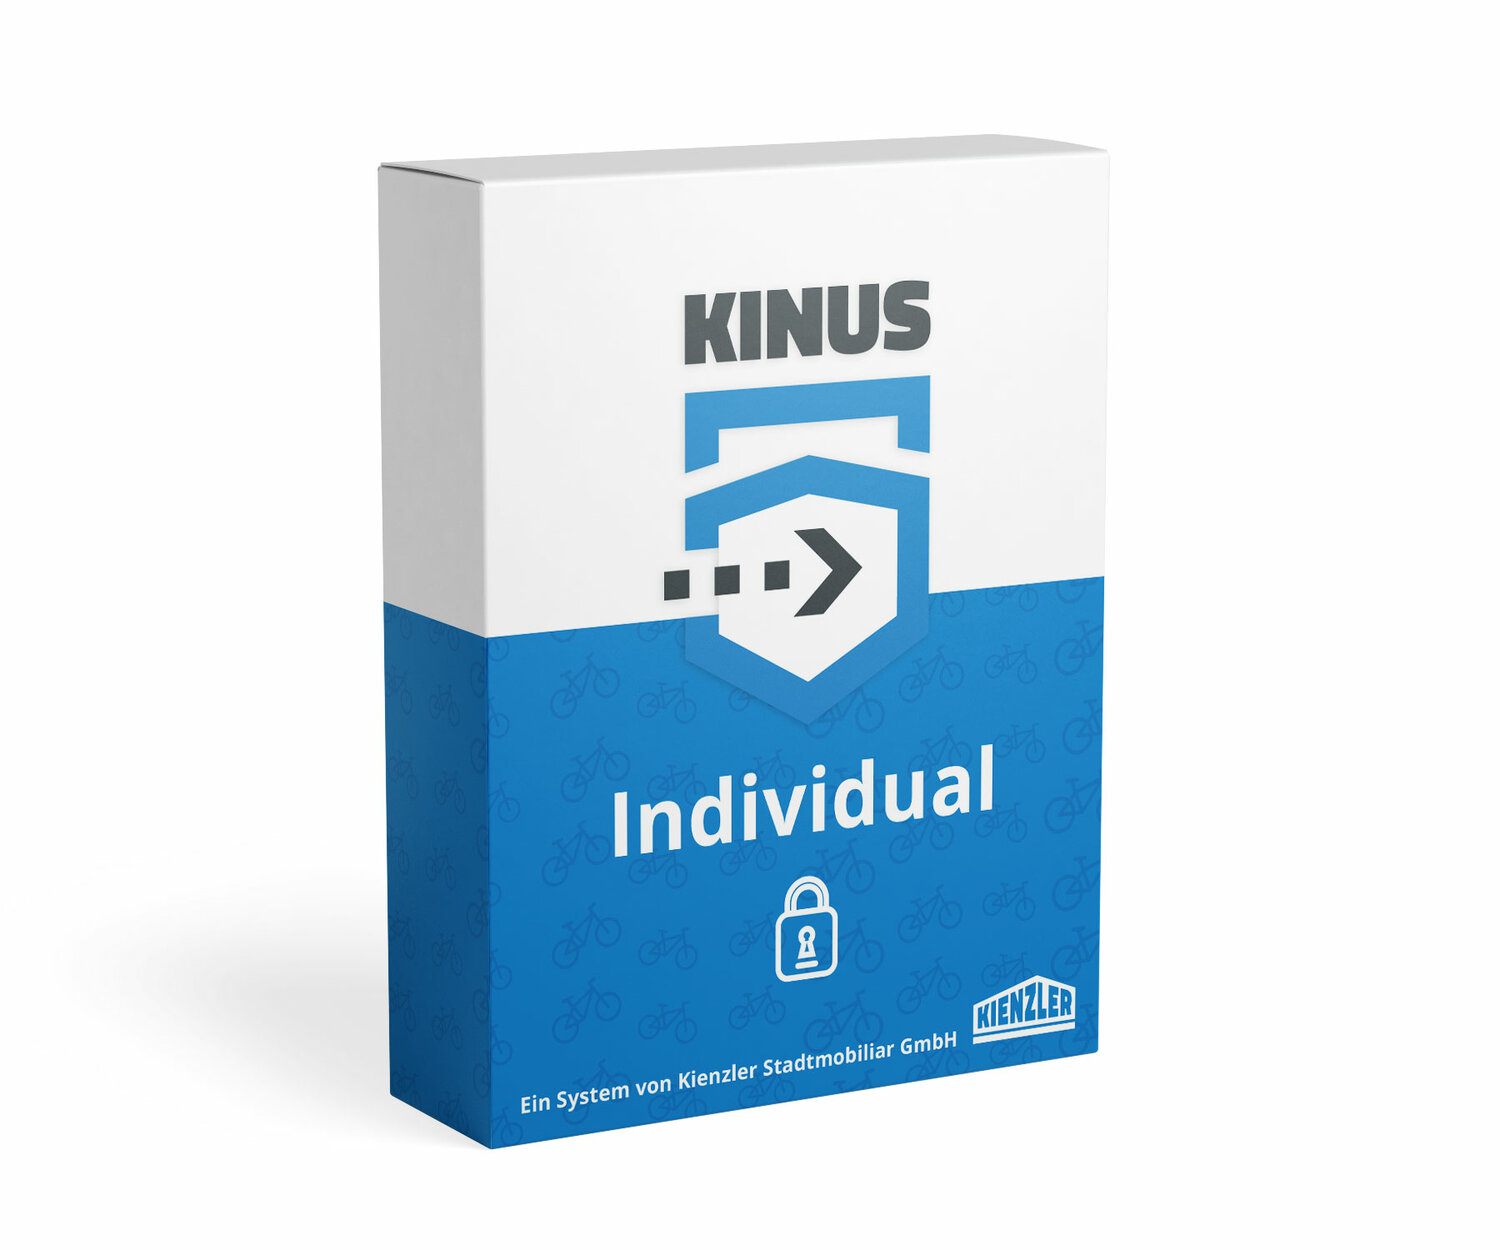 Grafische Darstellung des Zugangssystems Kinus Individual